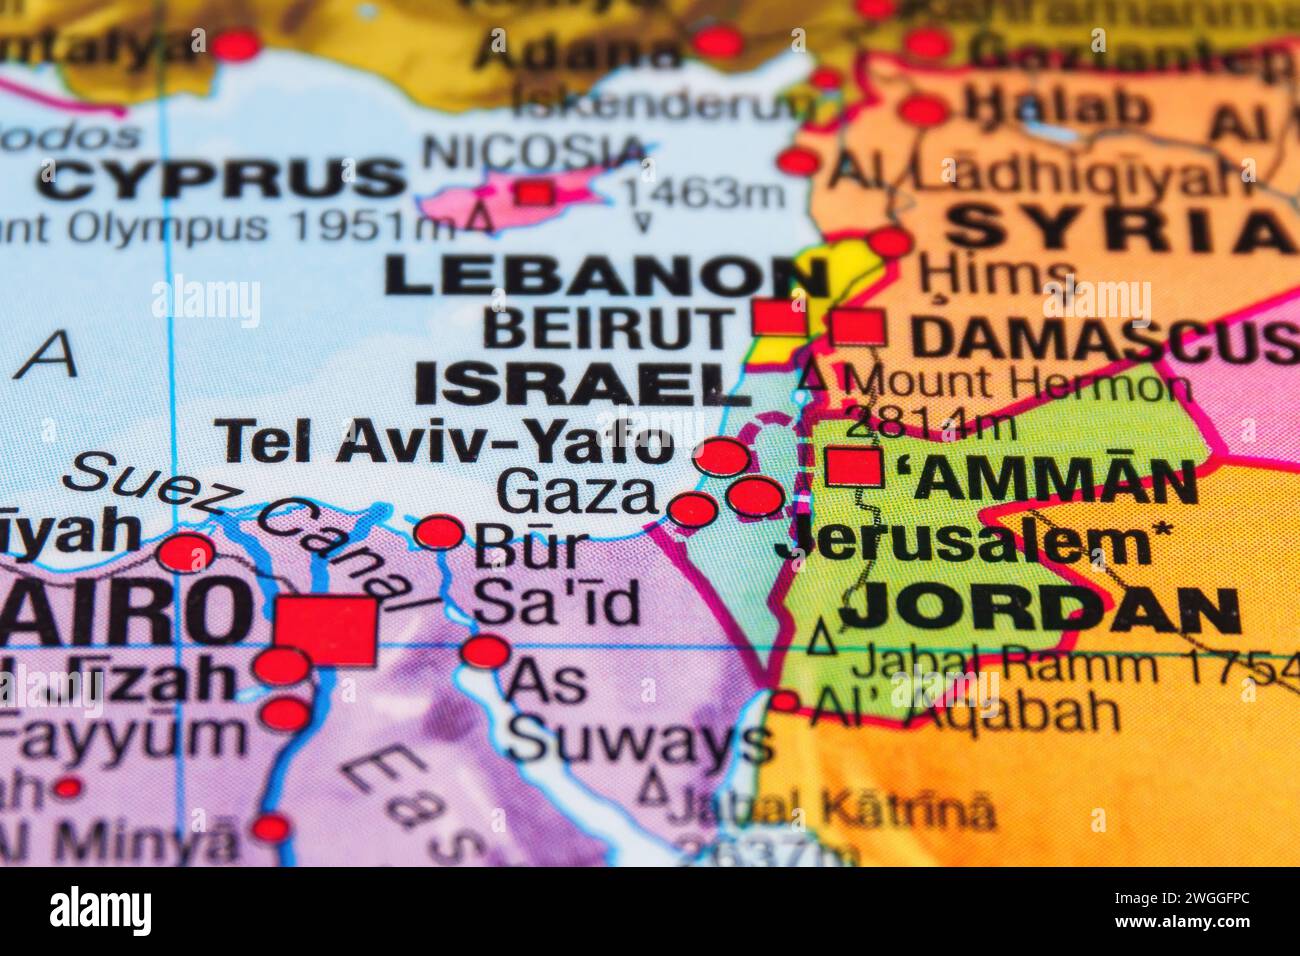 Striscia di Gaza, Palestina e Israele sulla mappa geopolitica. Foto di alta qualità Foto Stock